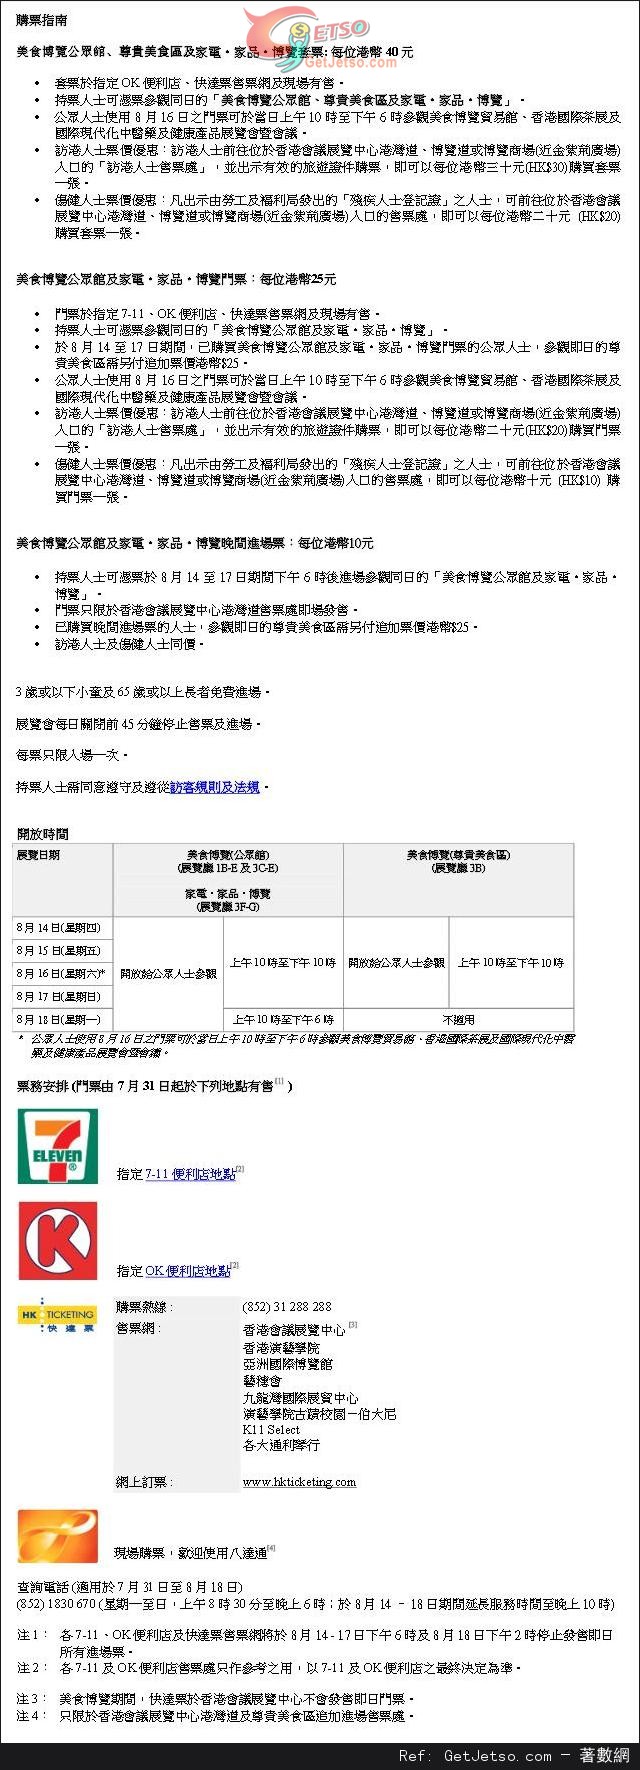 香港貿發局美食博覽2014攻略及購票指南(14年8月14-18日)圖片1